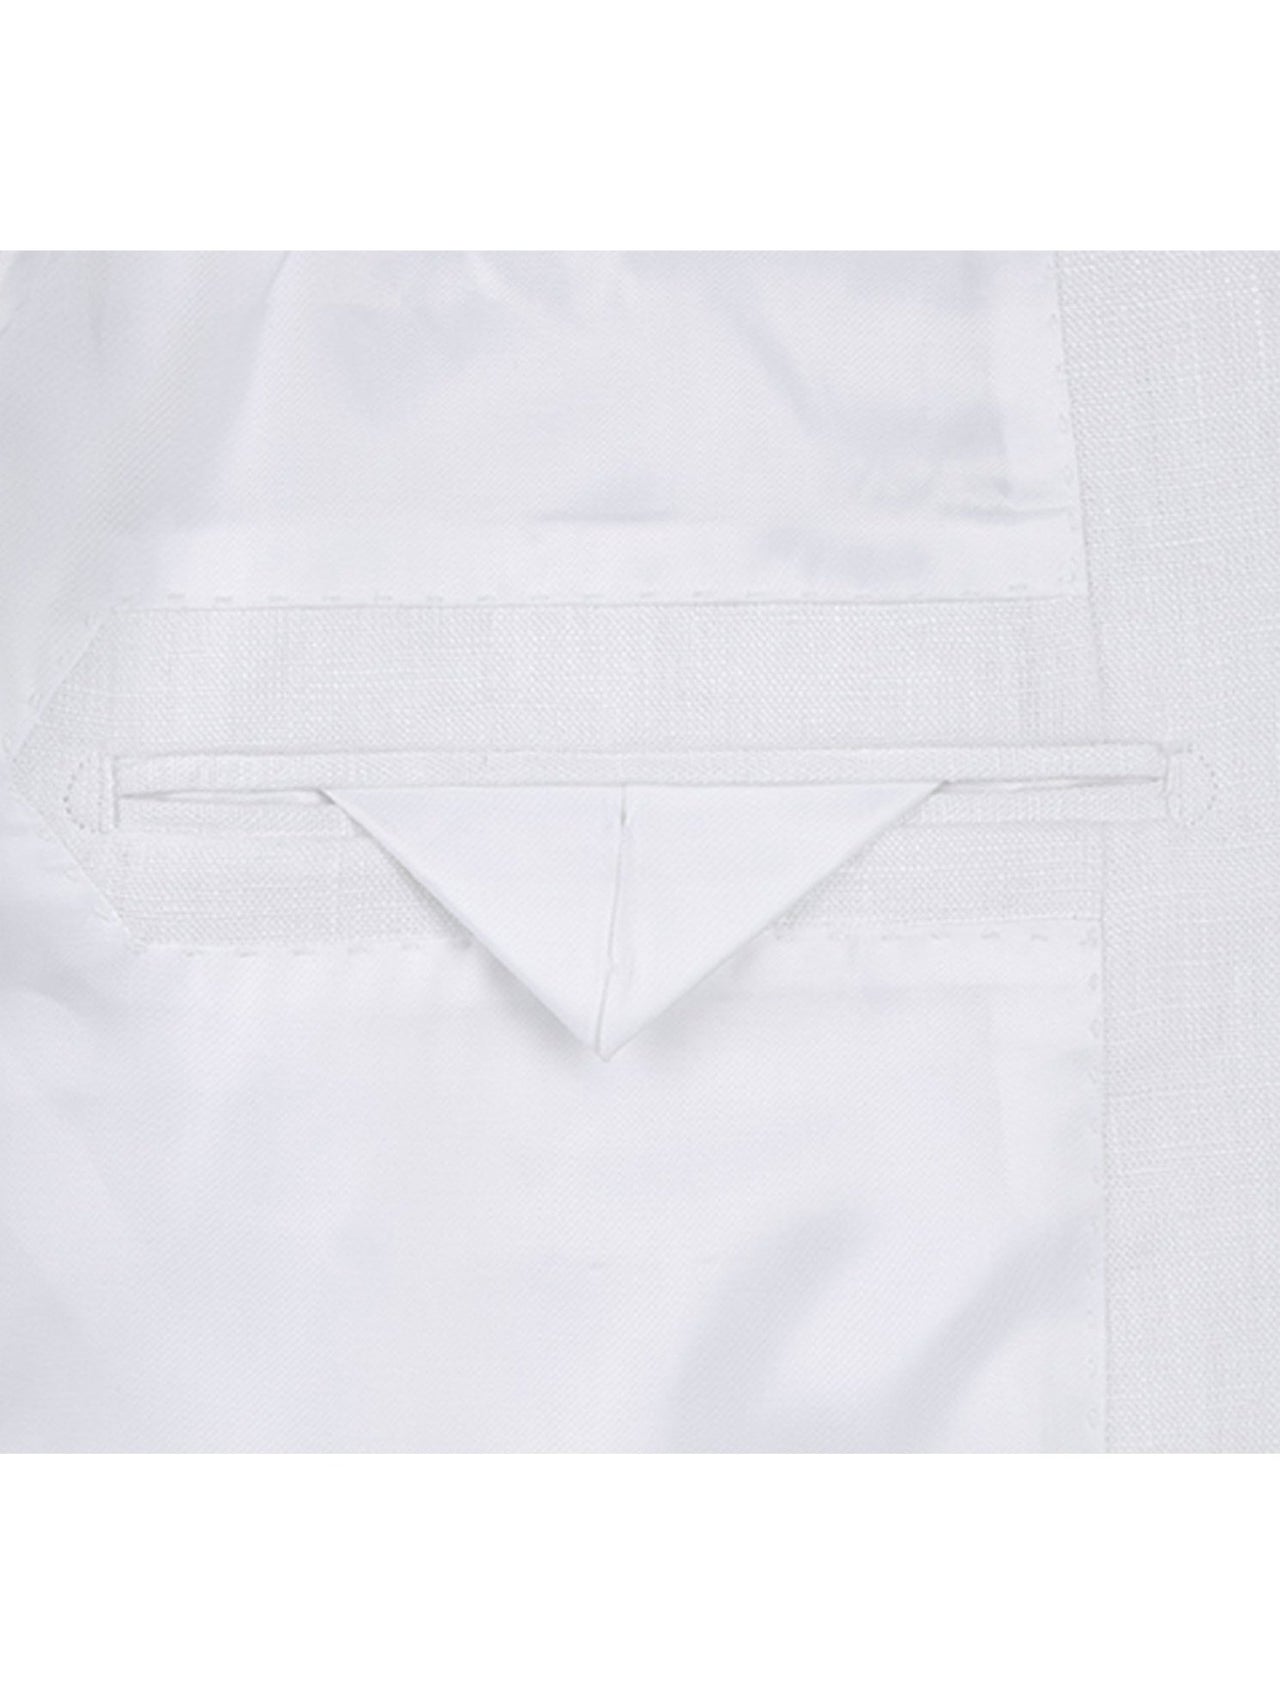 Men's Notch Lapels White Solid Linen Suits